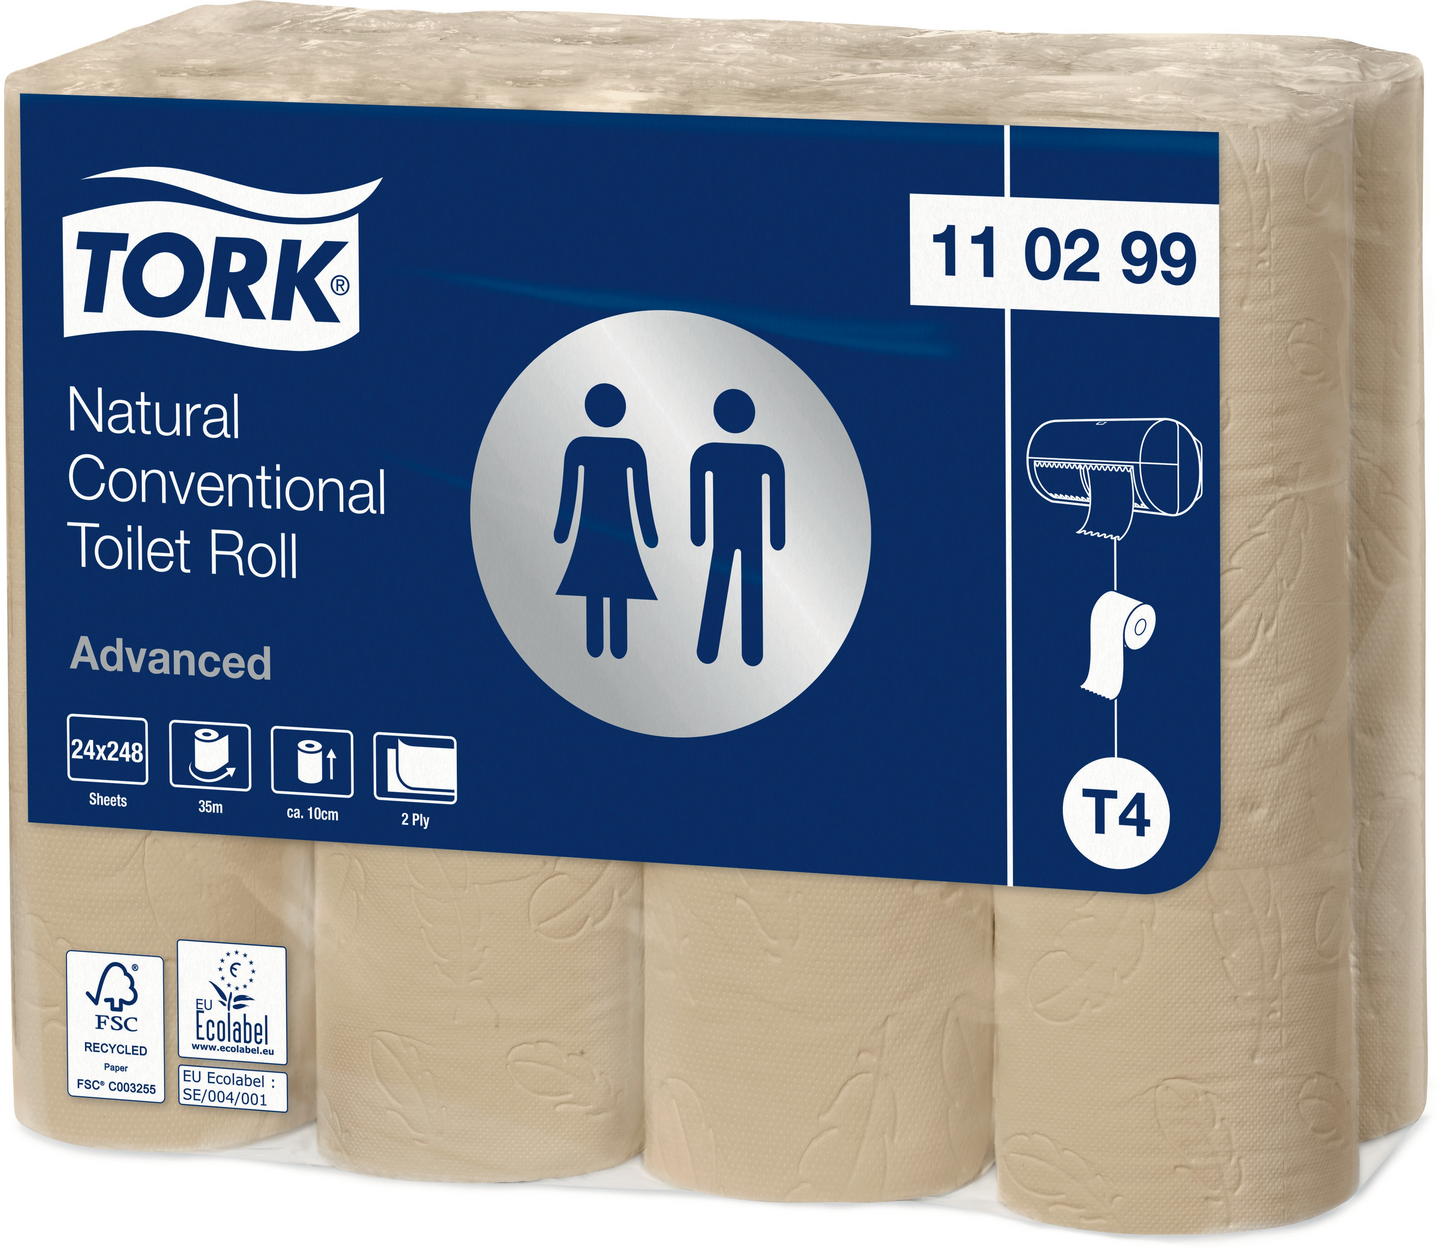 Tork Natural wc-paperi 24 x 248 arkkia Advanced T4